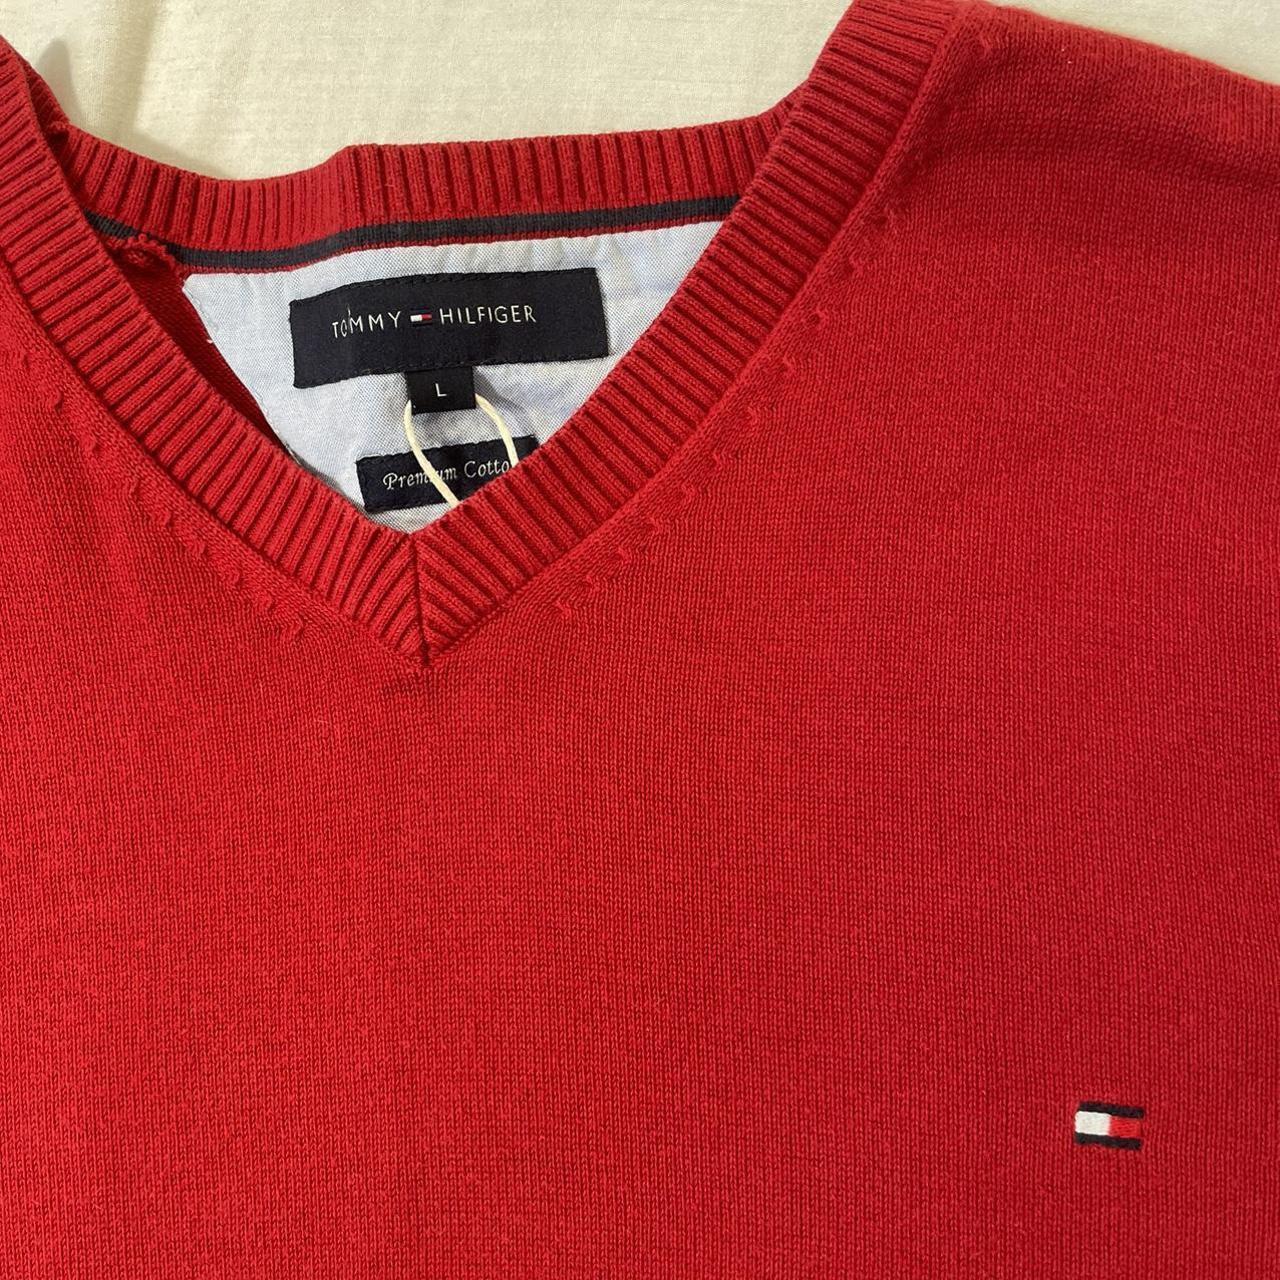 Tommy Hilfiger Red V Neck Sweater Top Size Large Pit - Depop